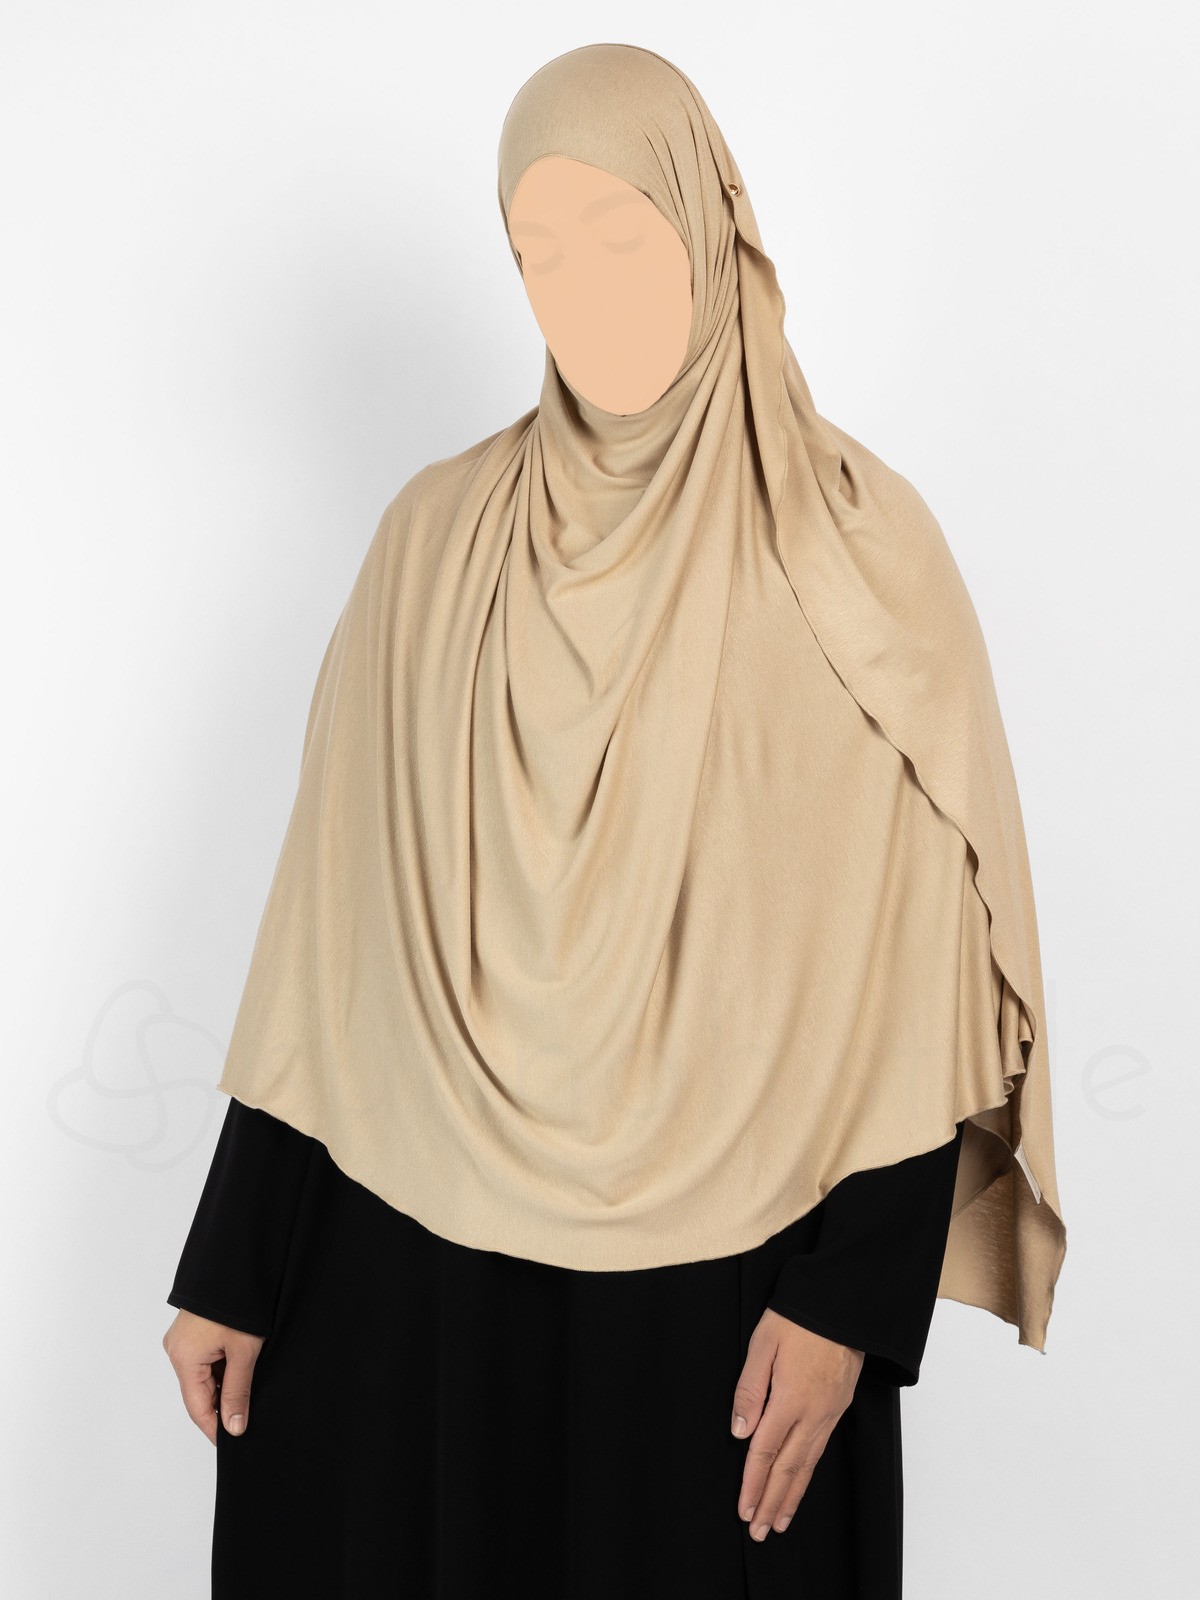 Sunnah Style - Urban Shayla (Soft Jersey) - XL (Sand)